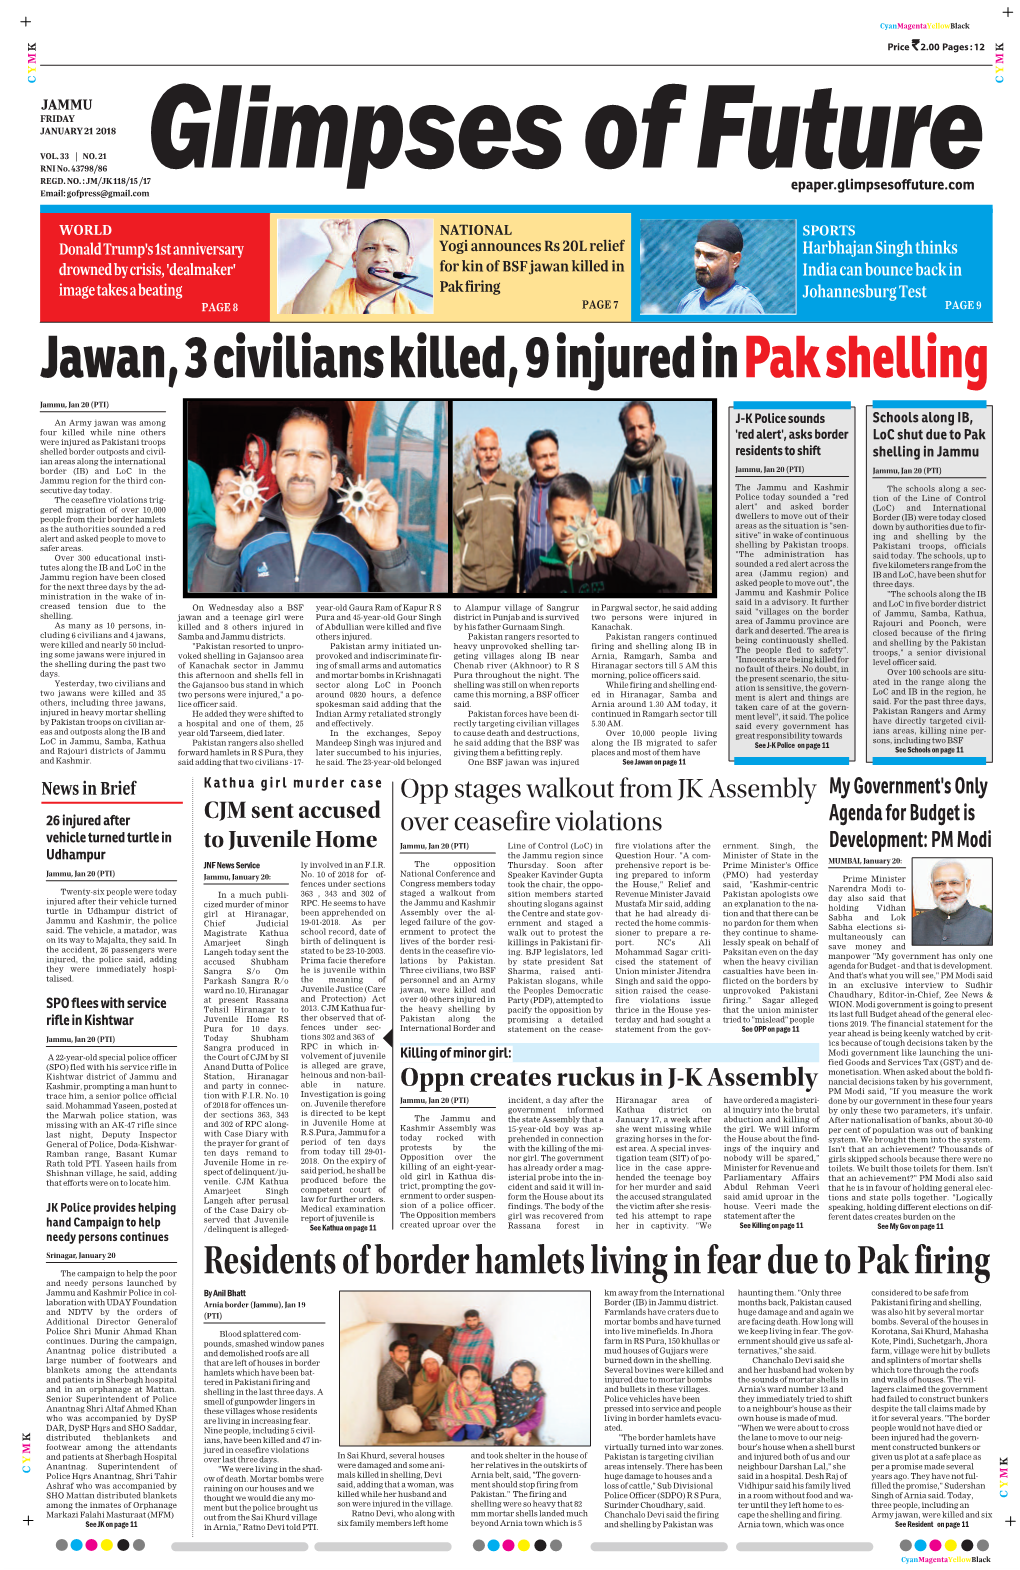 Jawan, 3 Civilians Killed, 9 Injured in Pak Shelling